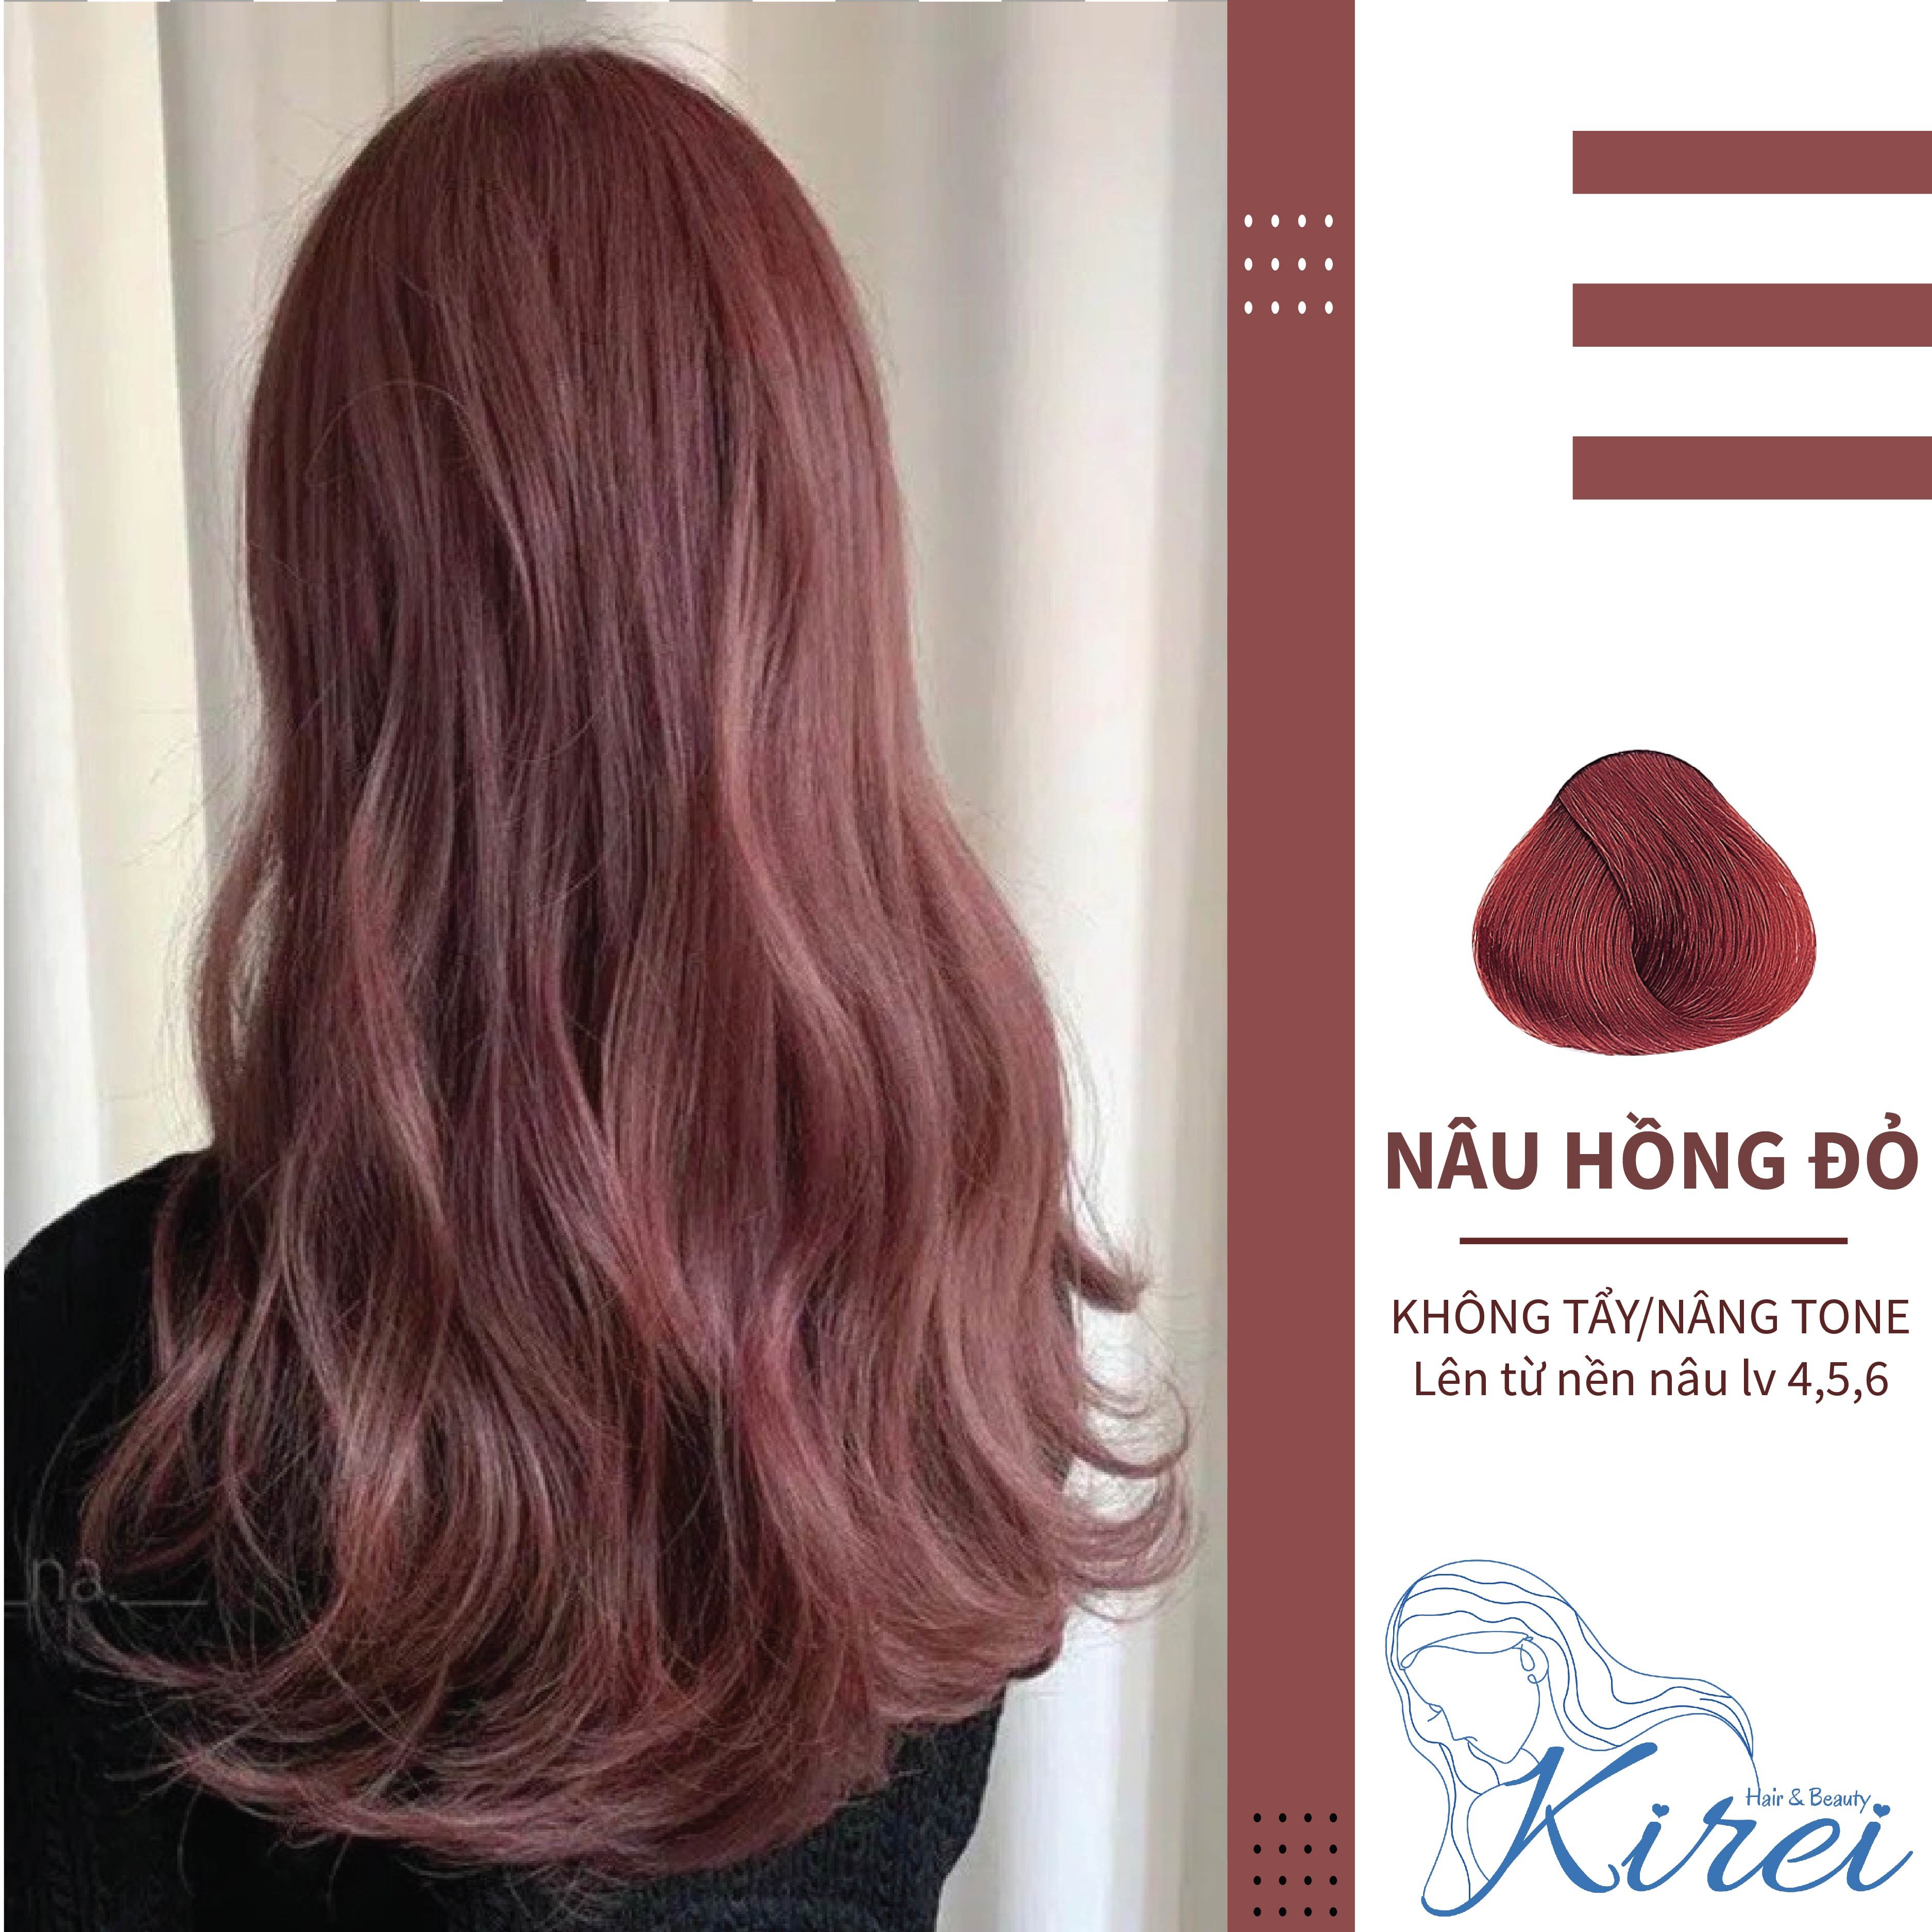 Hãy trải nghiệm sắc màu mới lạ cho mái tóc của bạn với màu nhuộm nâu hồng đỏ, mà không cần phải tẩy trắng tóc. Hãy xem hình ảnh để đón nhận sự thay đổi mới cho mái tóc của bạn!